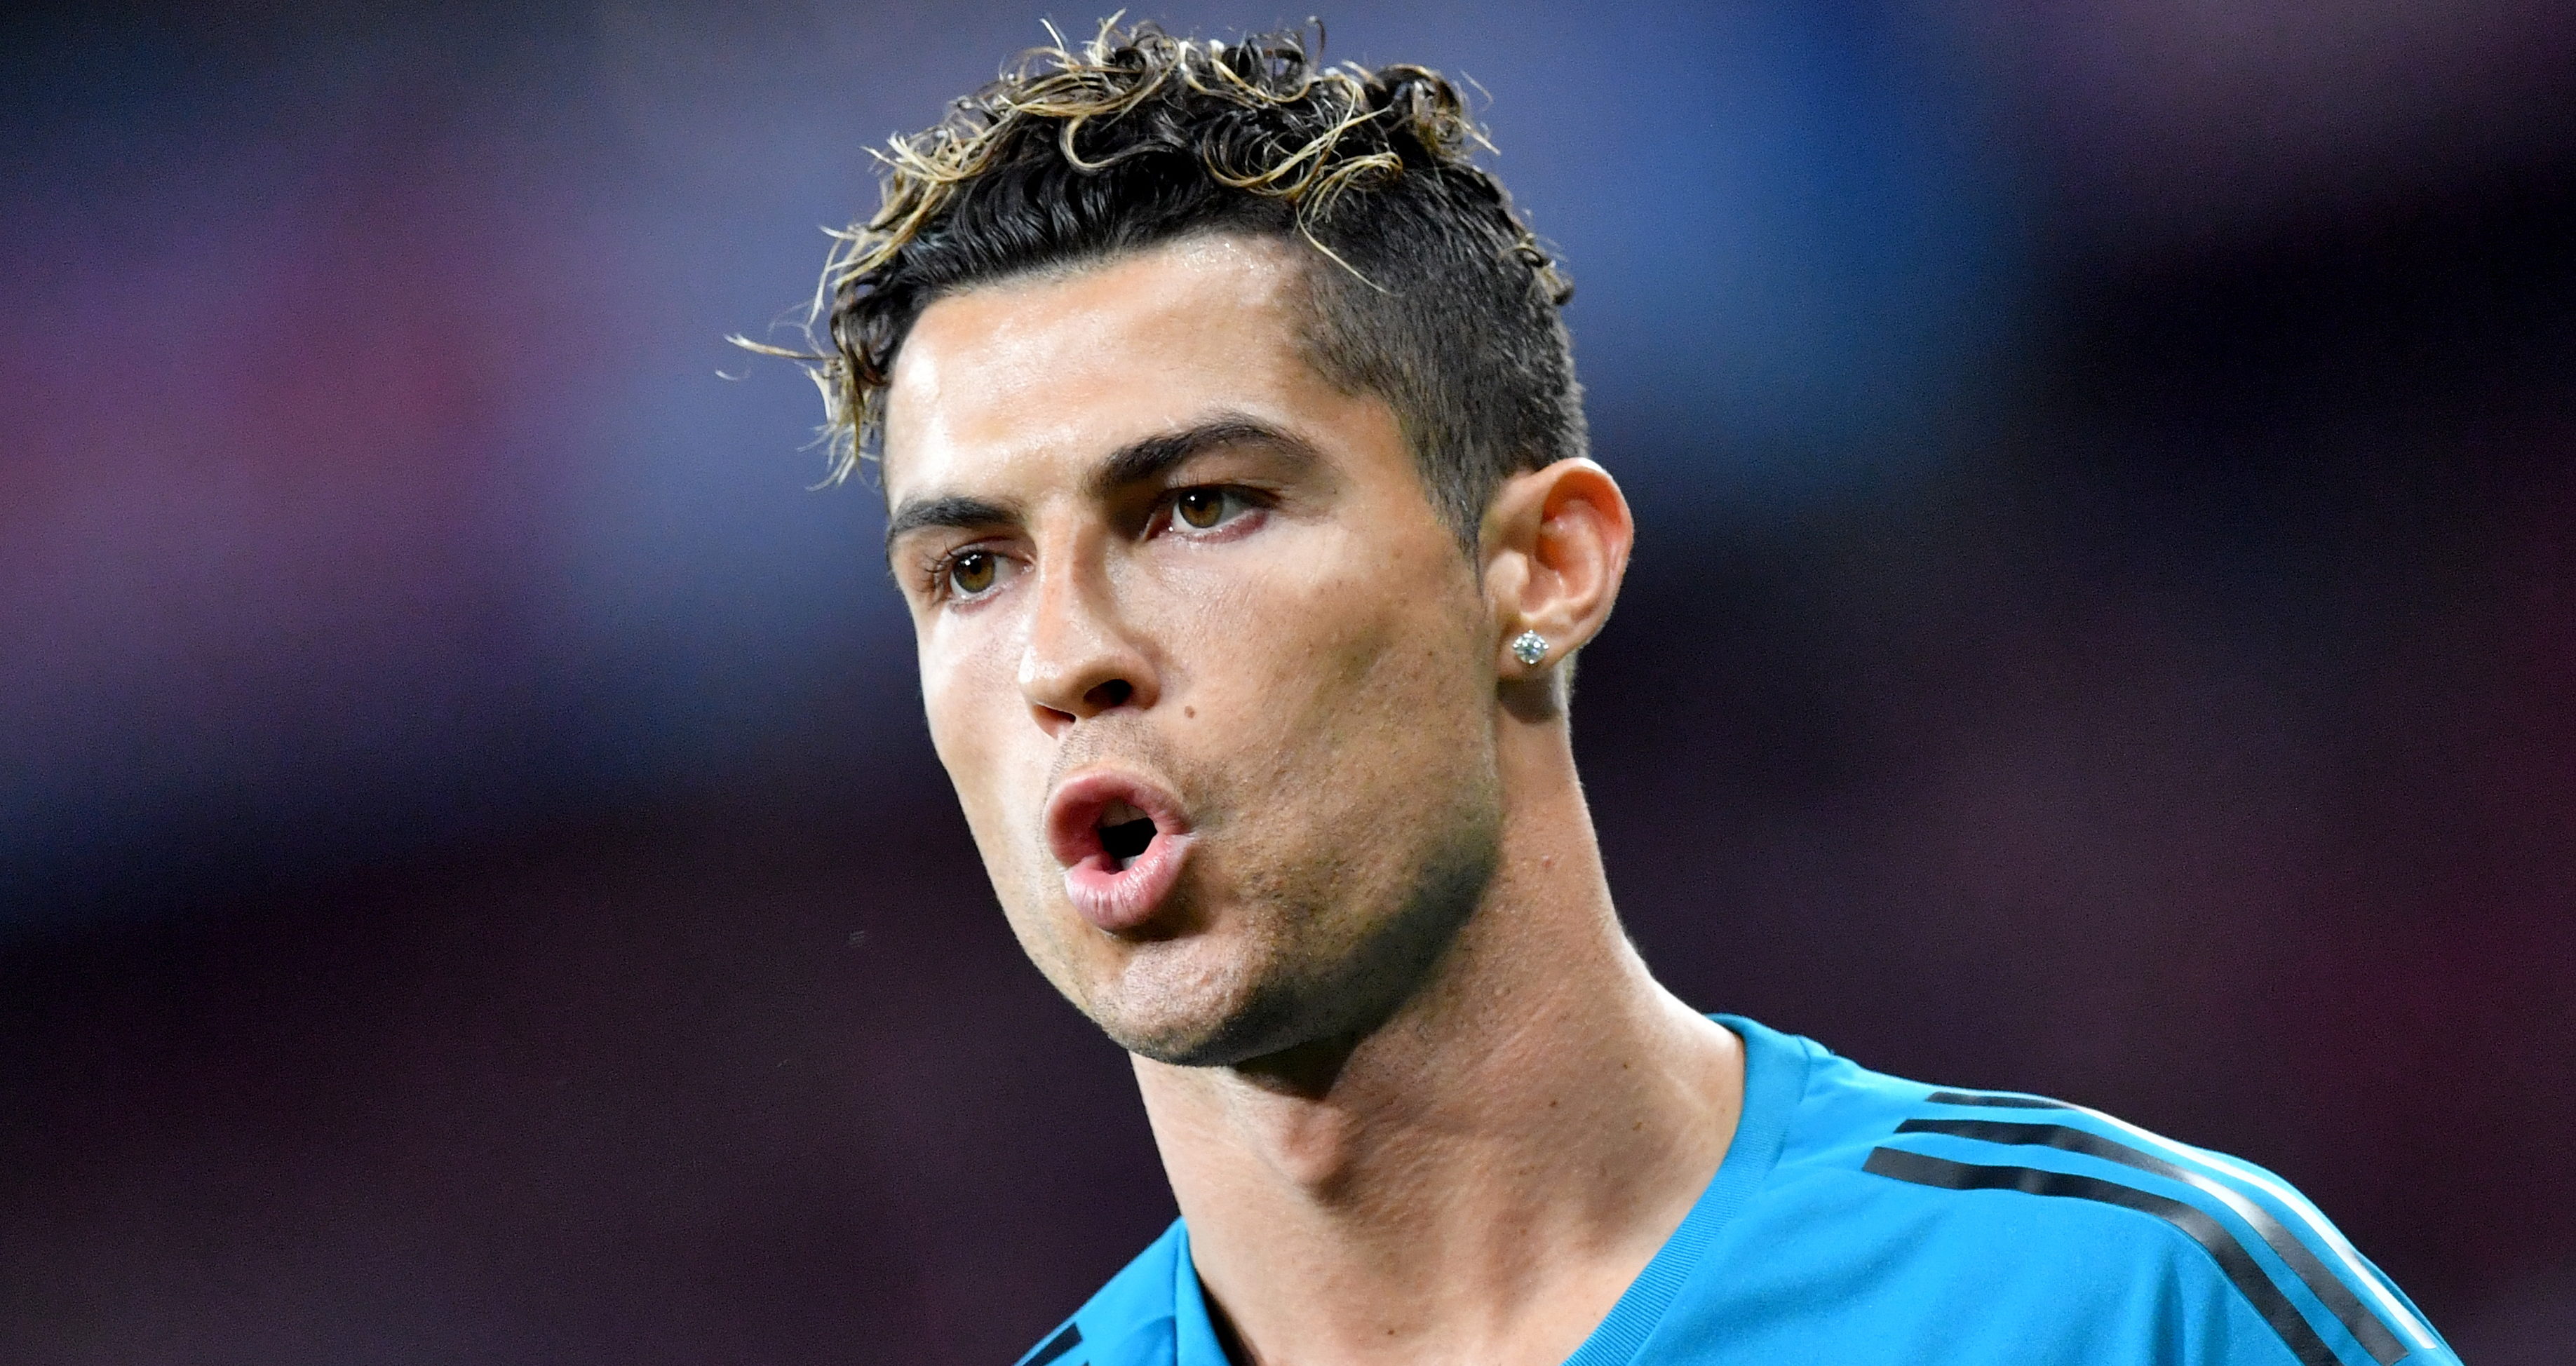 Real Madrid desmente ter pressionado Ronaldo e vai processar jornal português